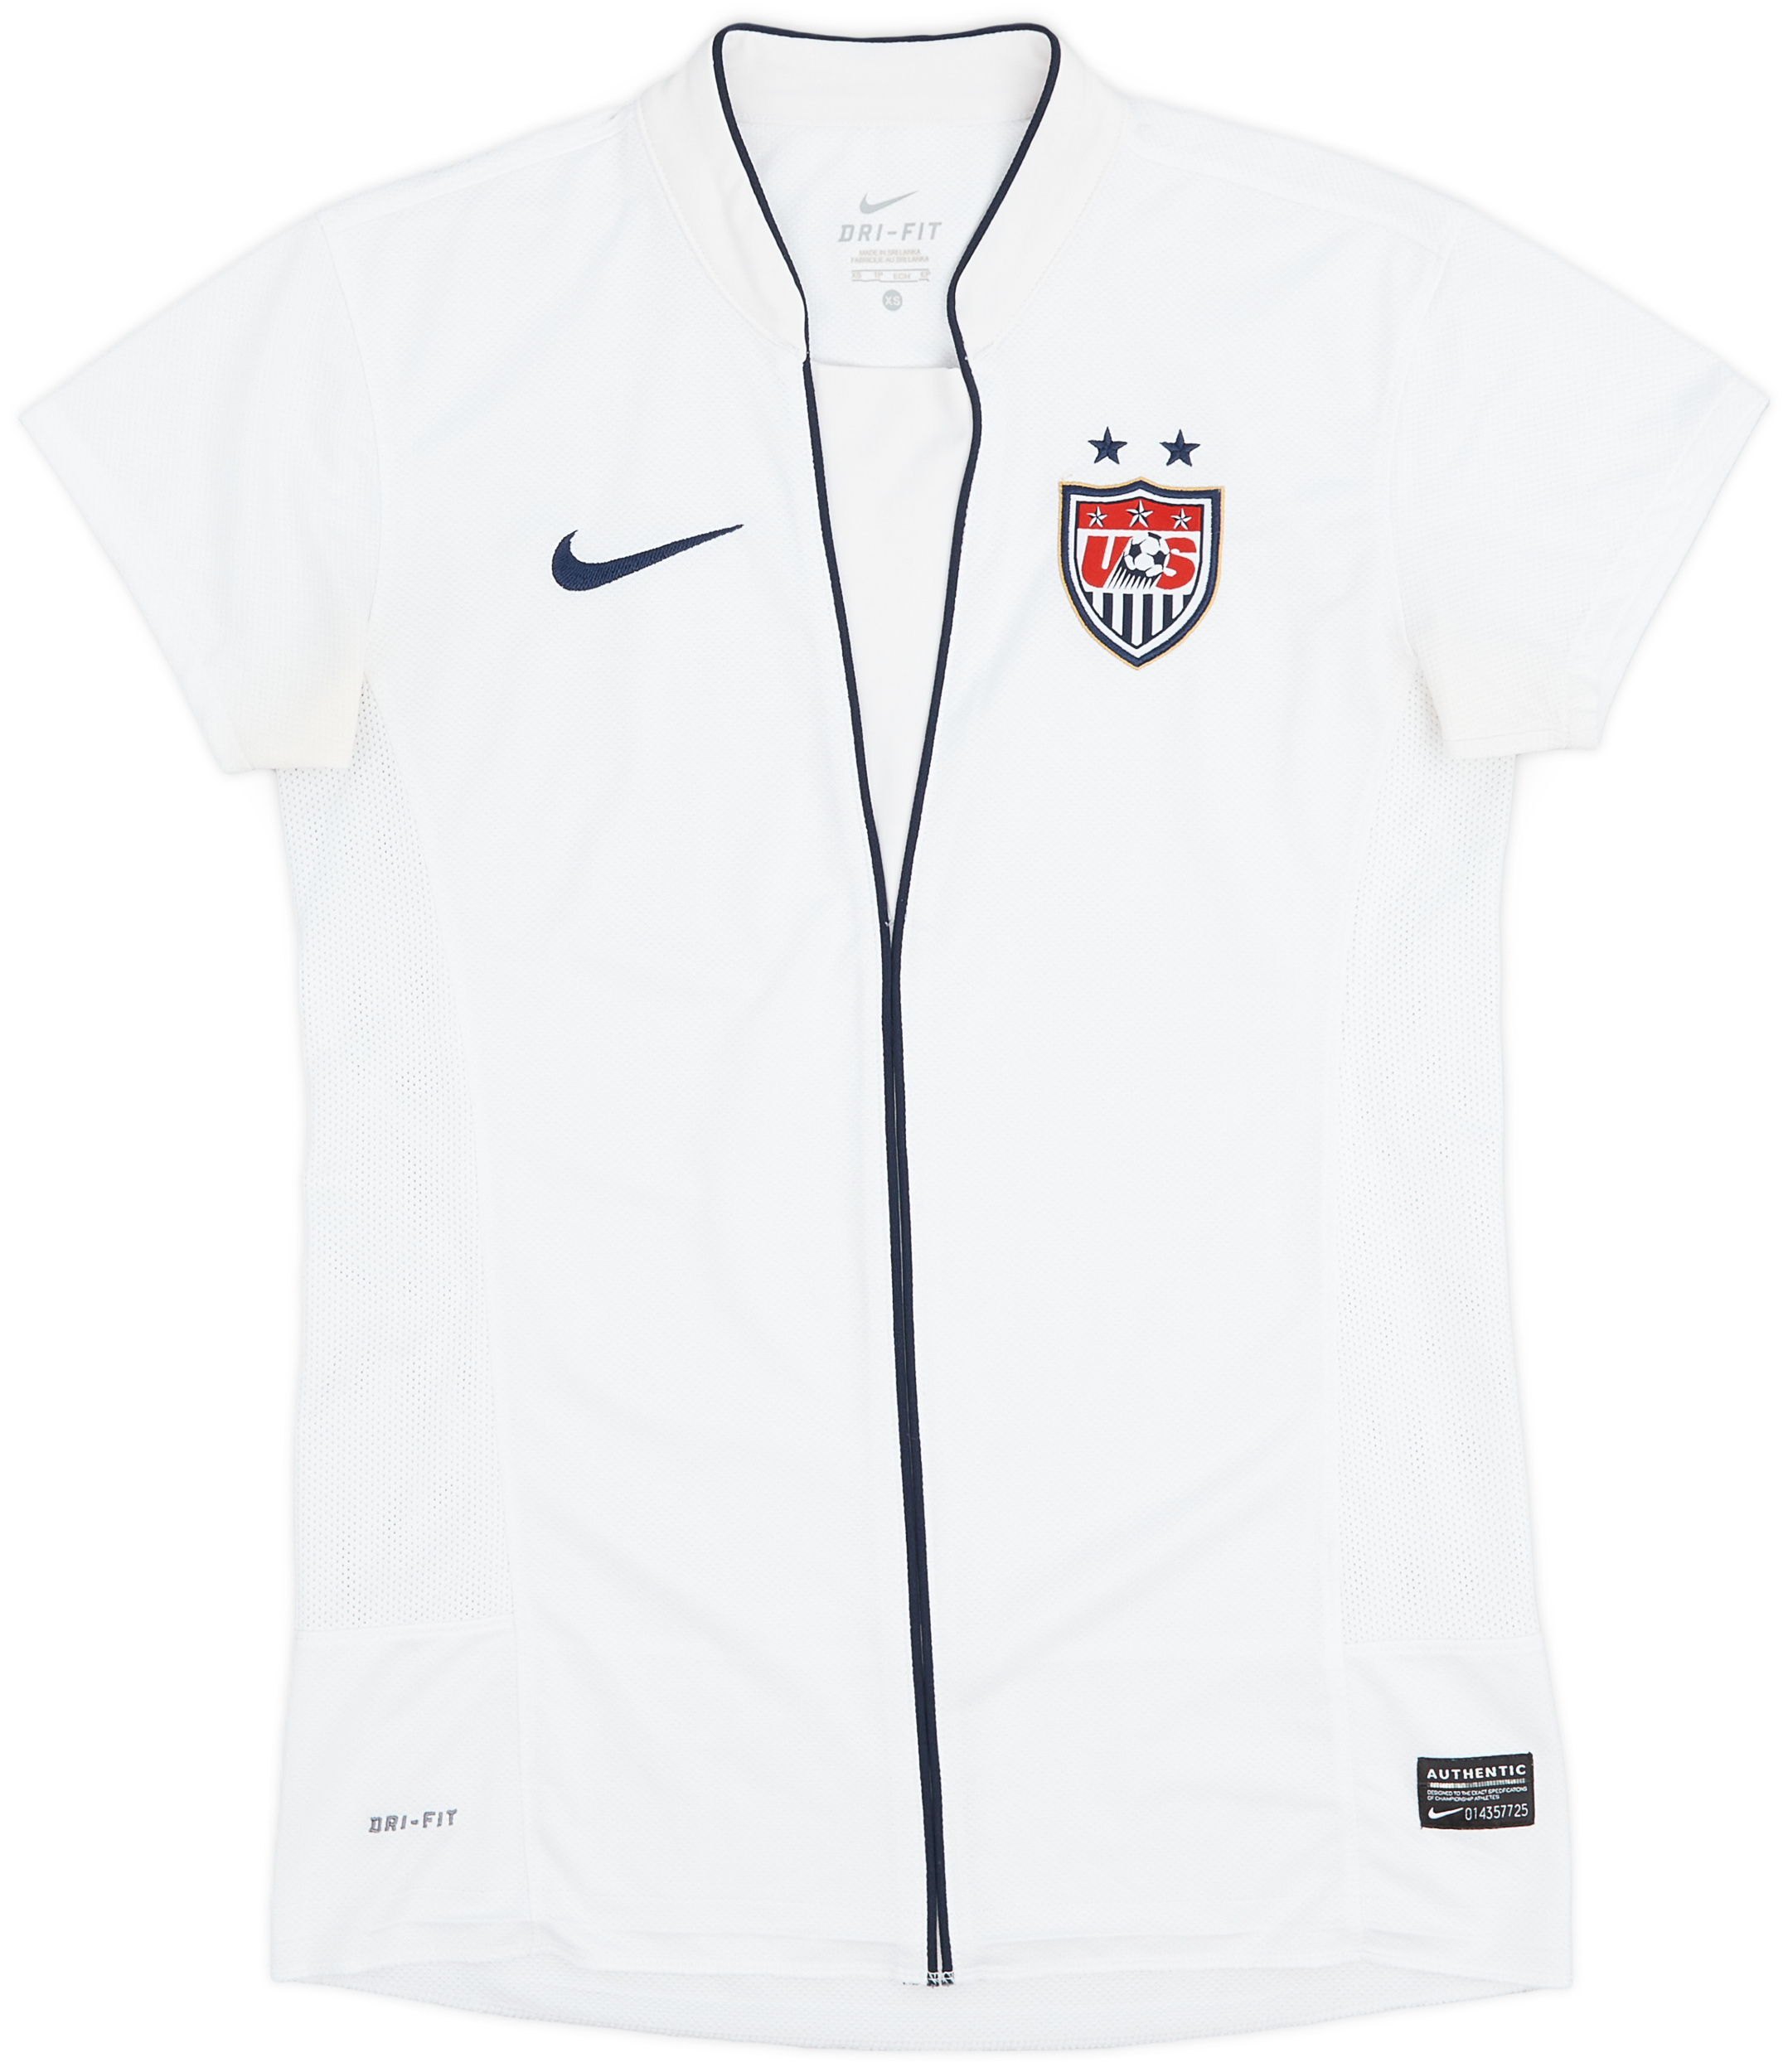 2011 USA Women's Home Shirt - 9/10 - (Women's )